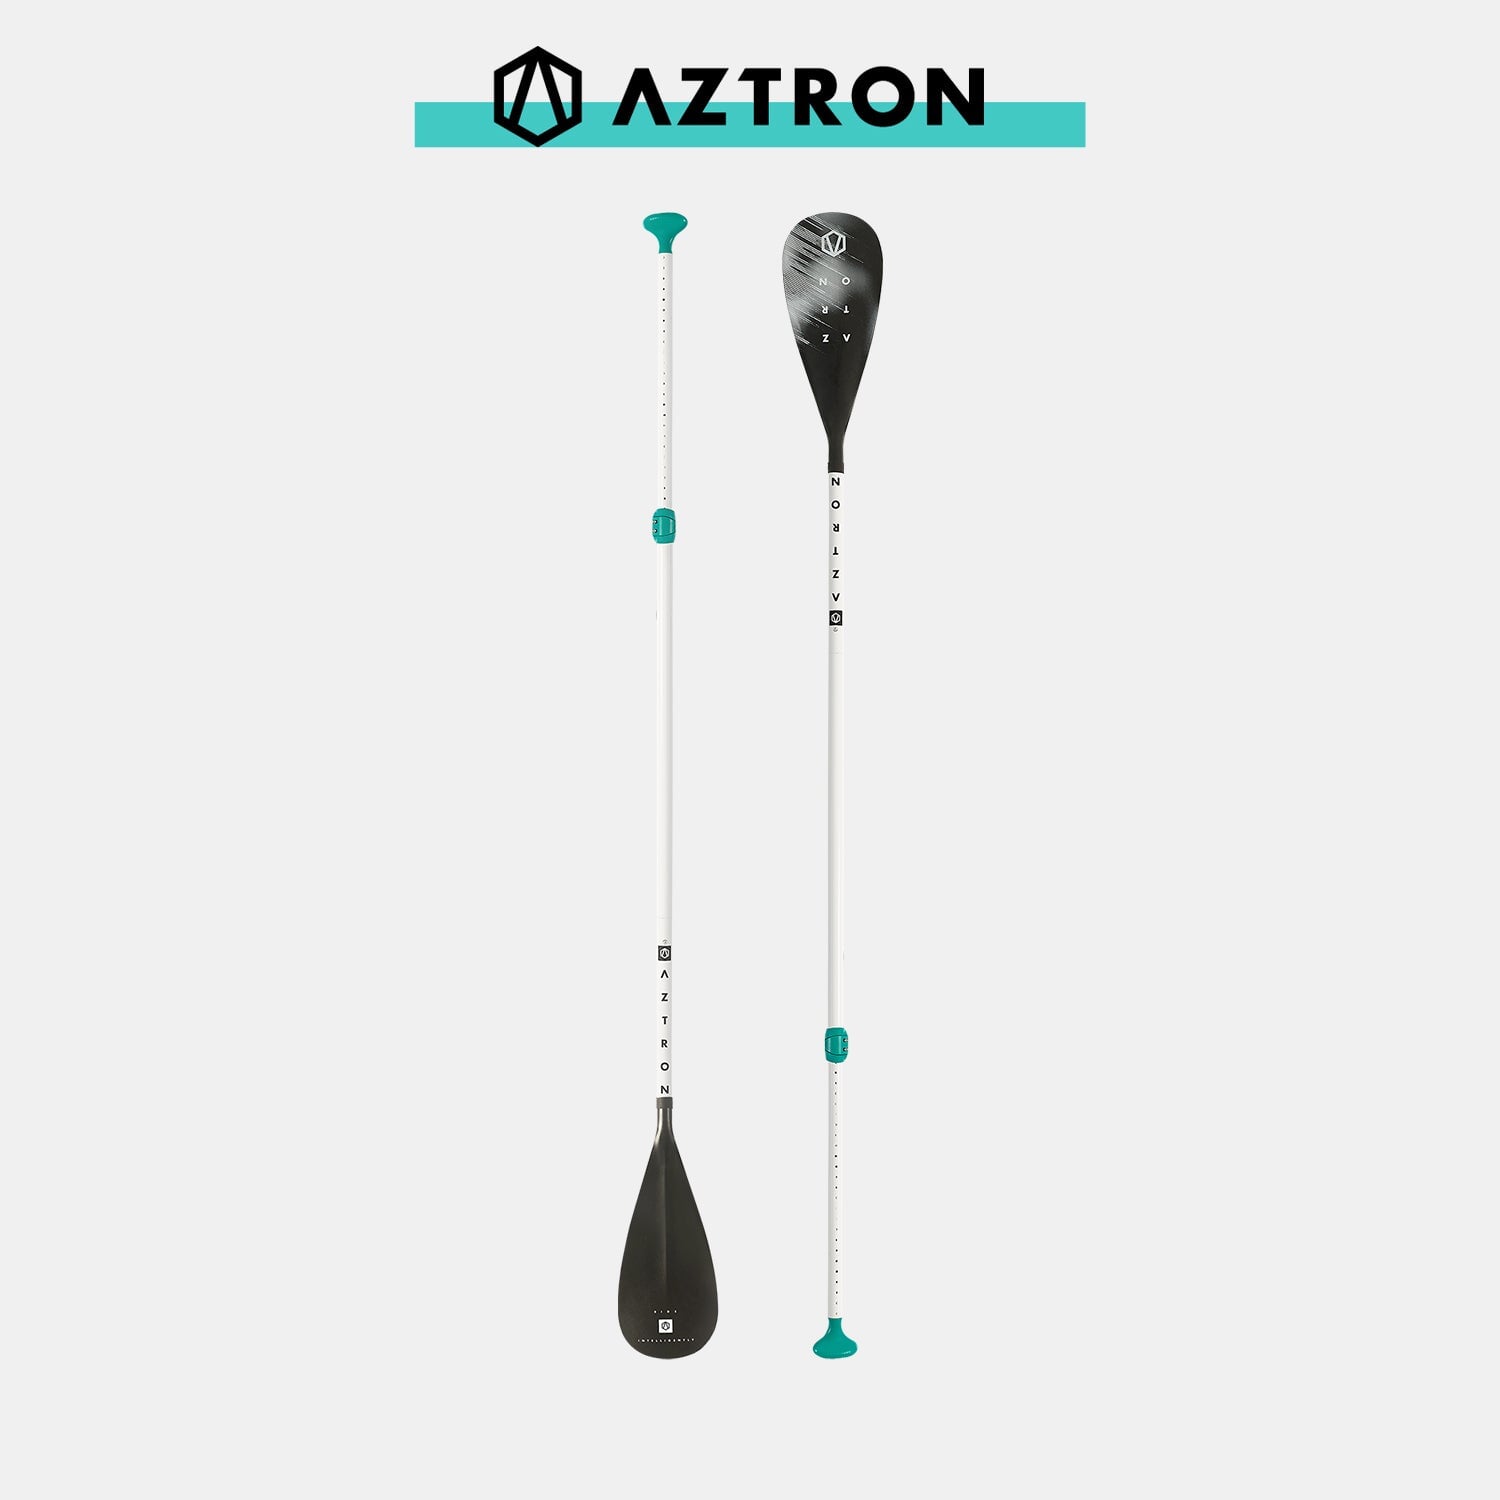 Set iSUP AZTRON Terra Touring 10'6'', 320x81x15 cm, volume 270 L